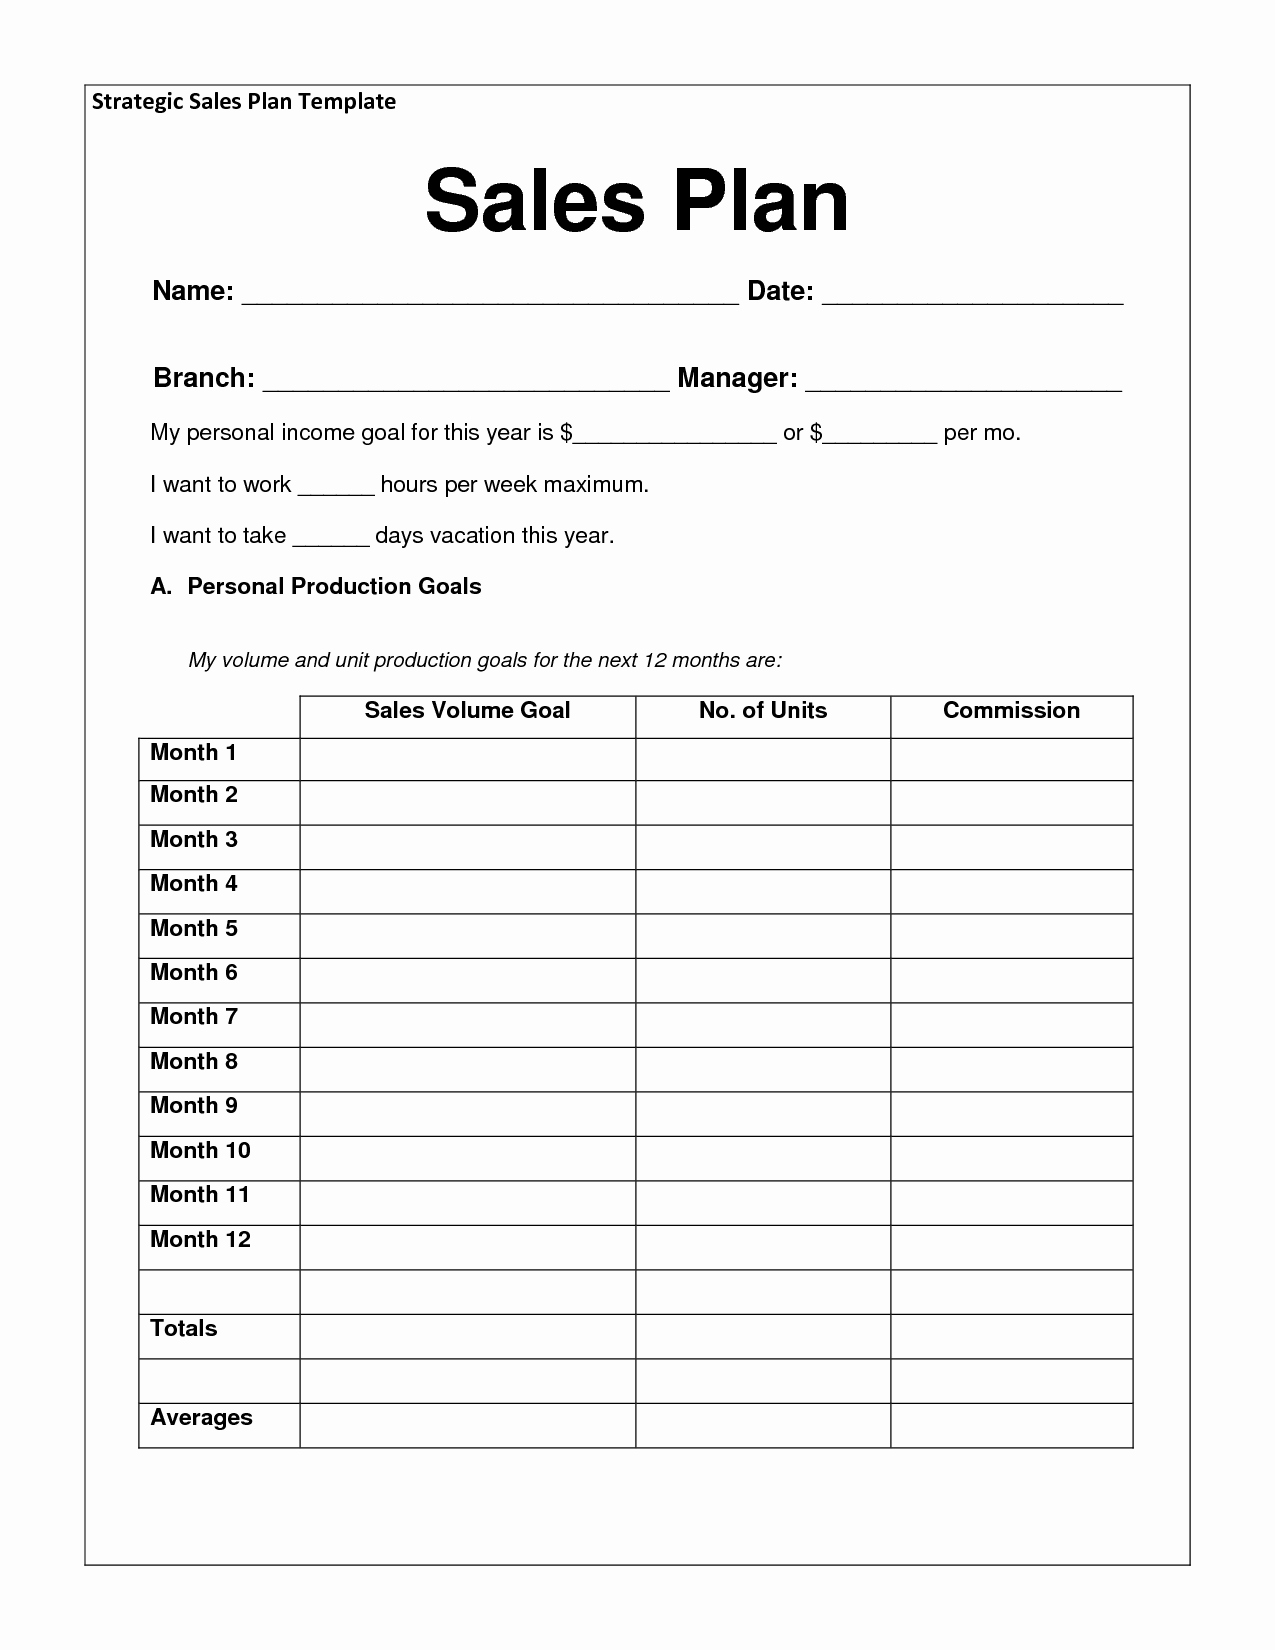 Weekly Sales Plan Template Elegant Sales Plan Templates Word Excel Samples